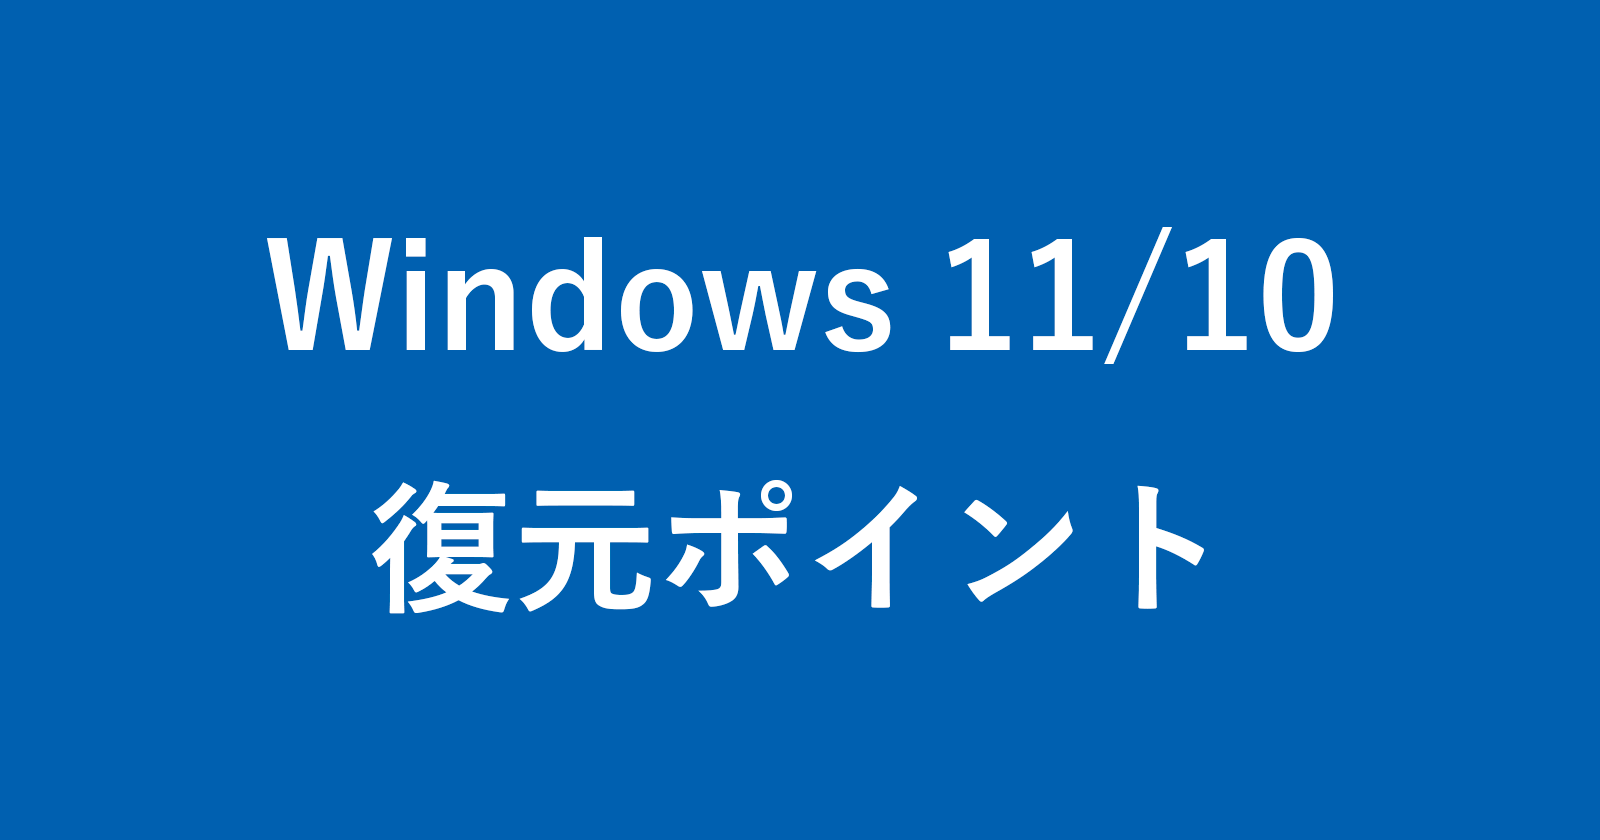 windows 10 create restore point